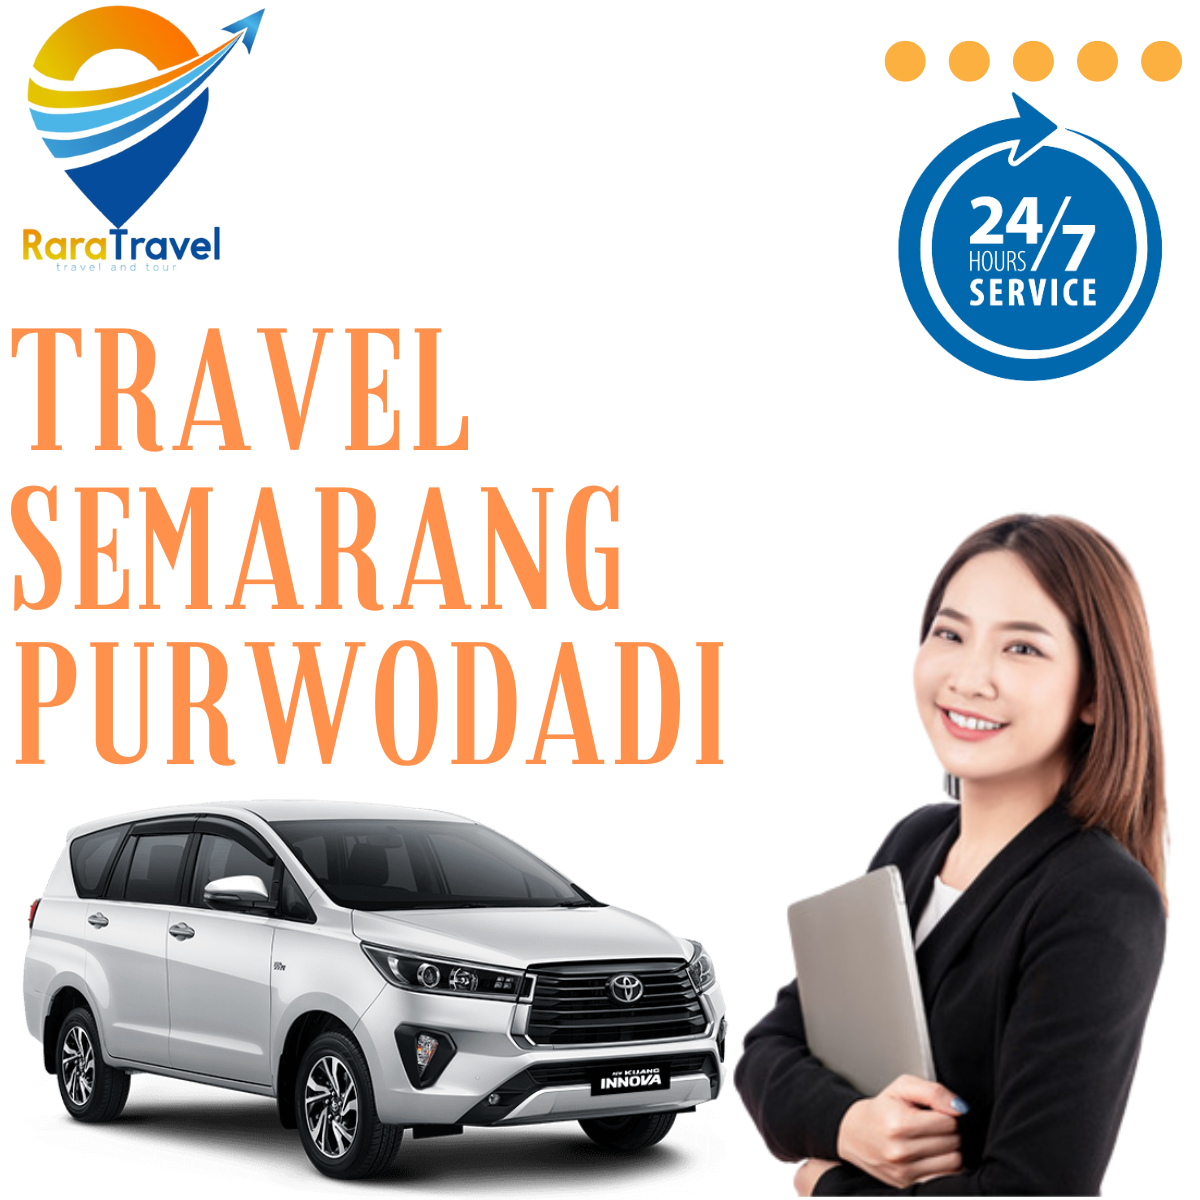 Travel Semarang Purwodadi Grobogan Murah - RARATRAVEL.ID